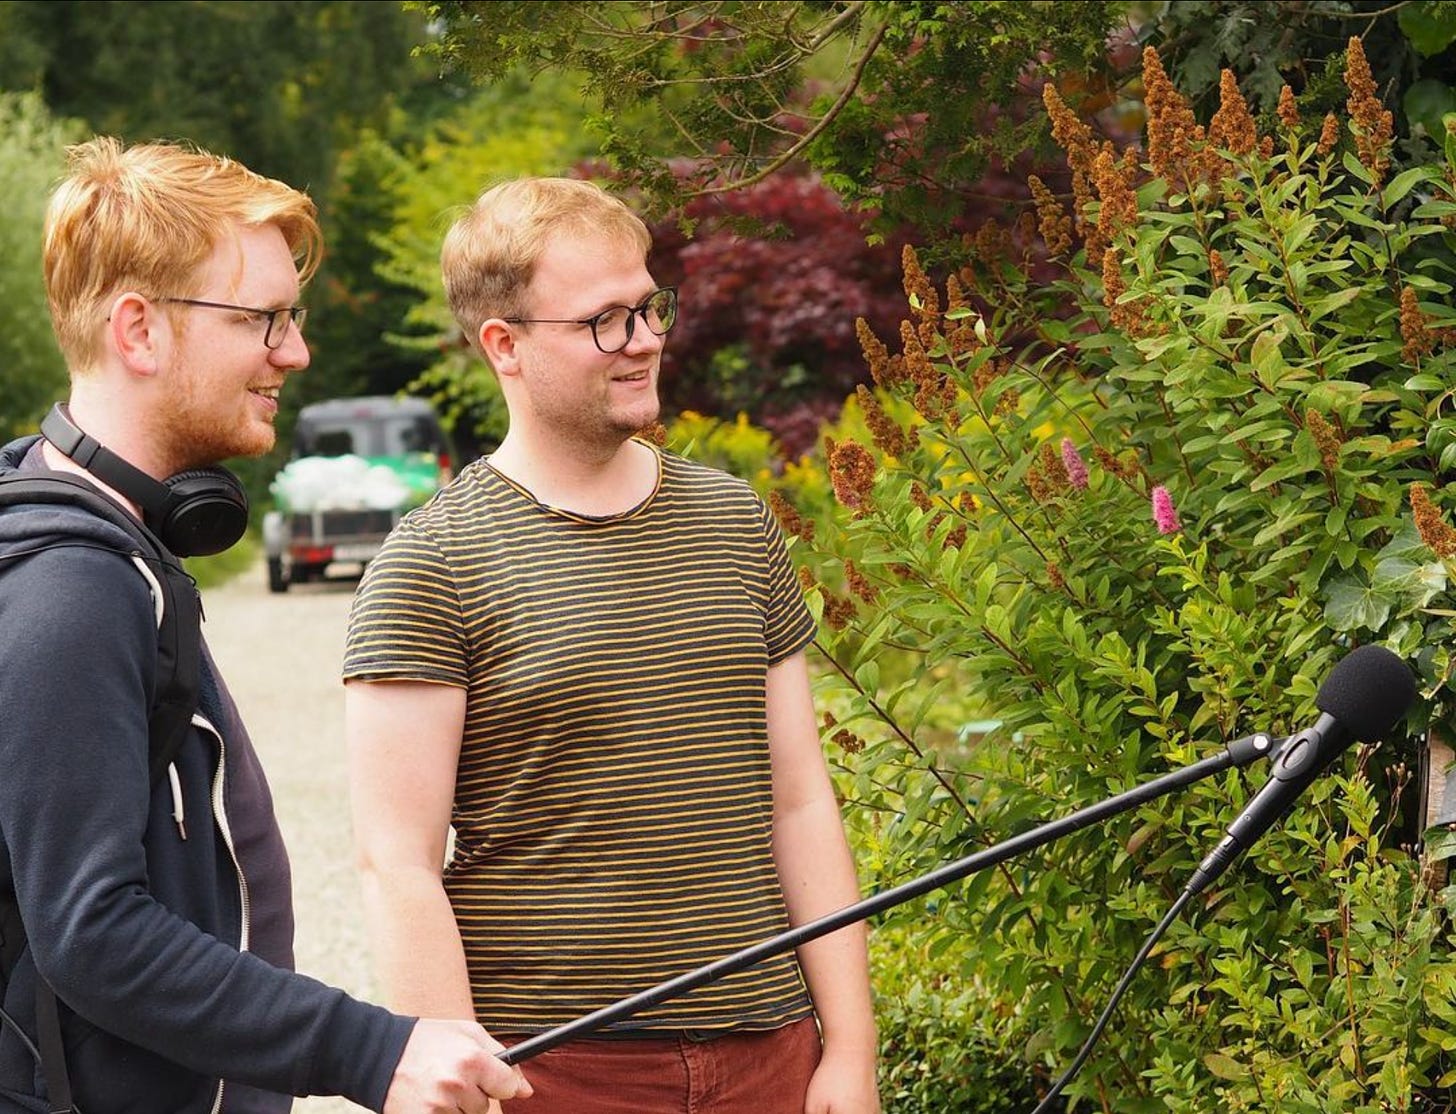 foto van Groentjes makers Marius (rood haar, bril) en Jurgen (Blond haar, ook bril) die in een tuin staan. Ze kijken naar buiten de foto een bosje in, Marius heeft een microfoon op een hengel vast waarmee hij het bosje lijkt te interviewen